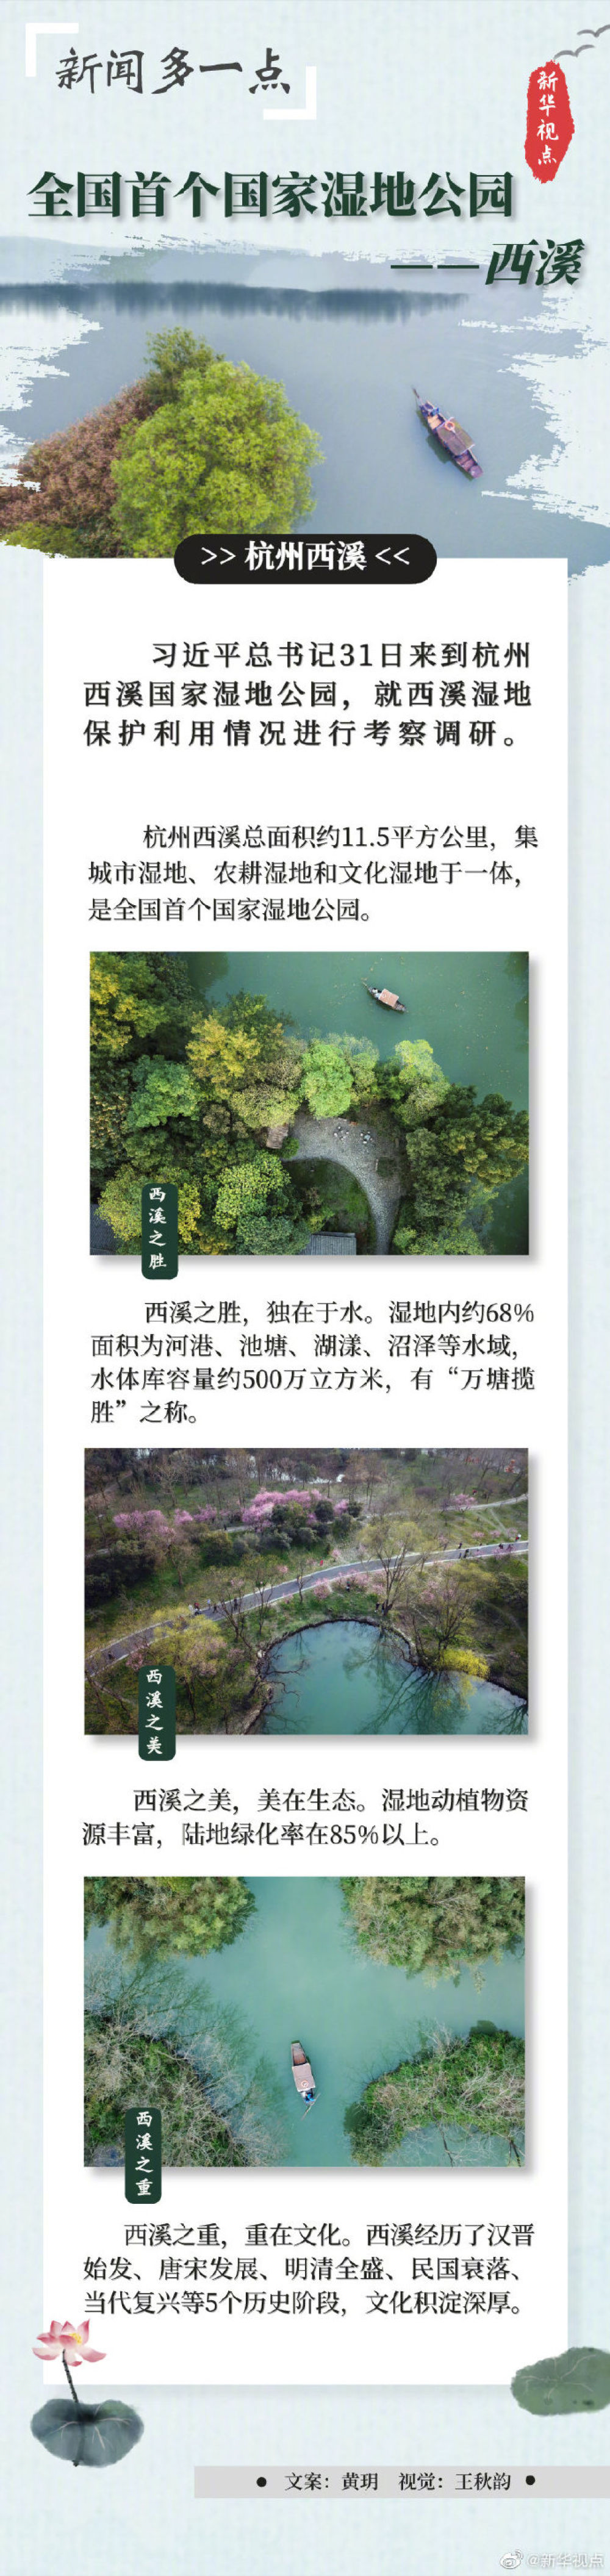 习近平考察杭州湿地保护利用和城市治理情况